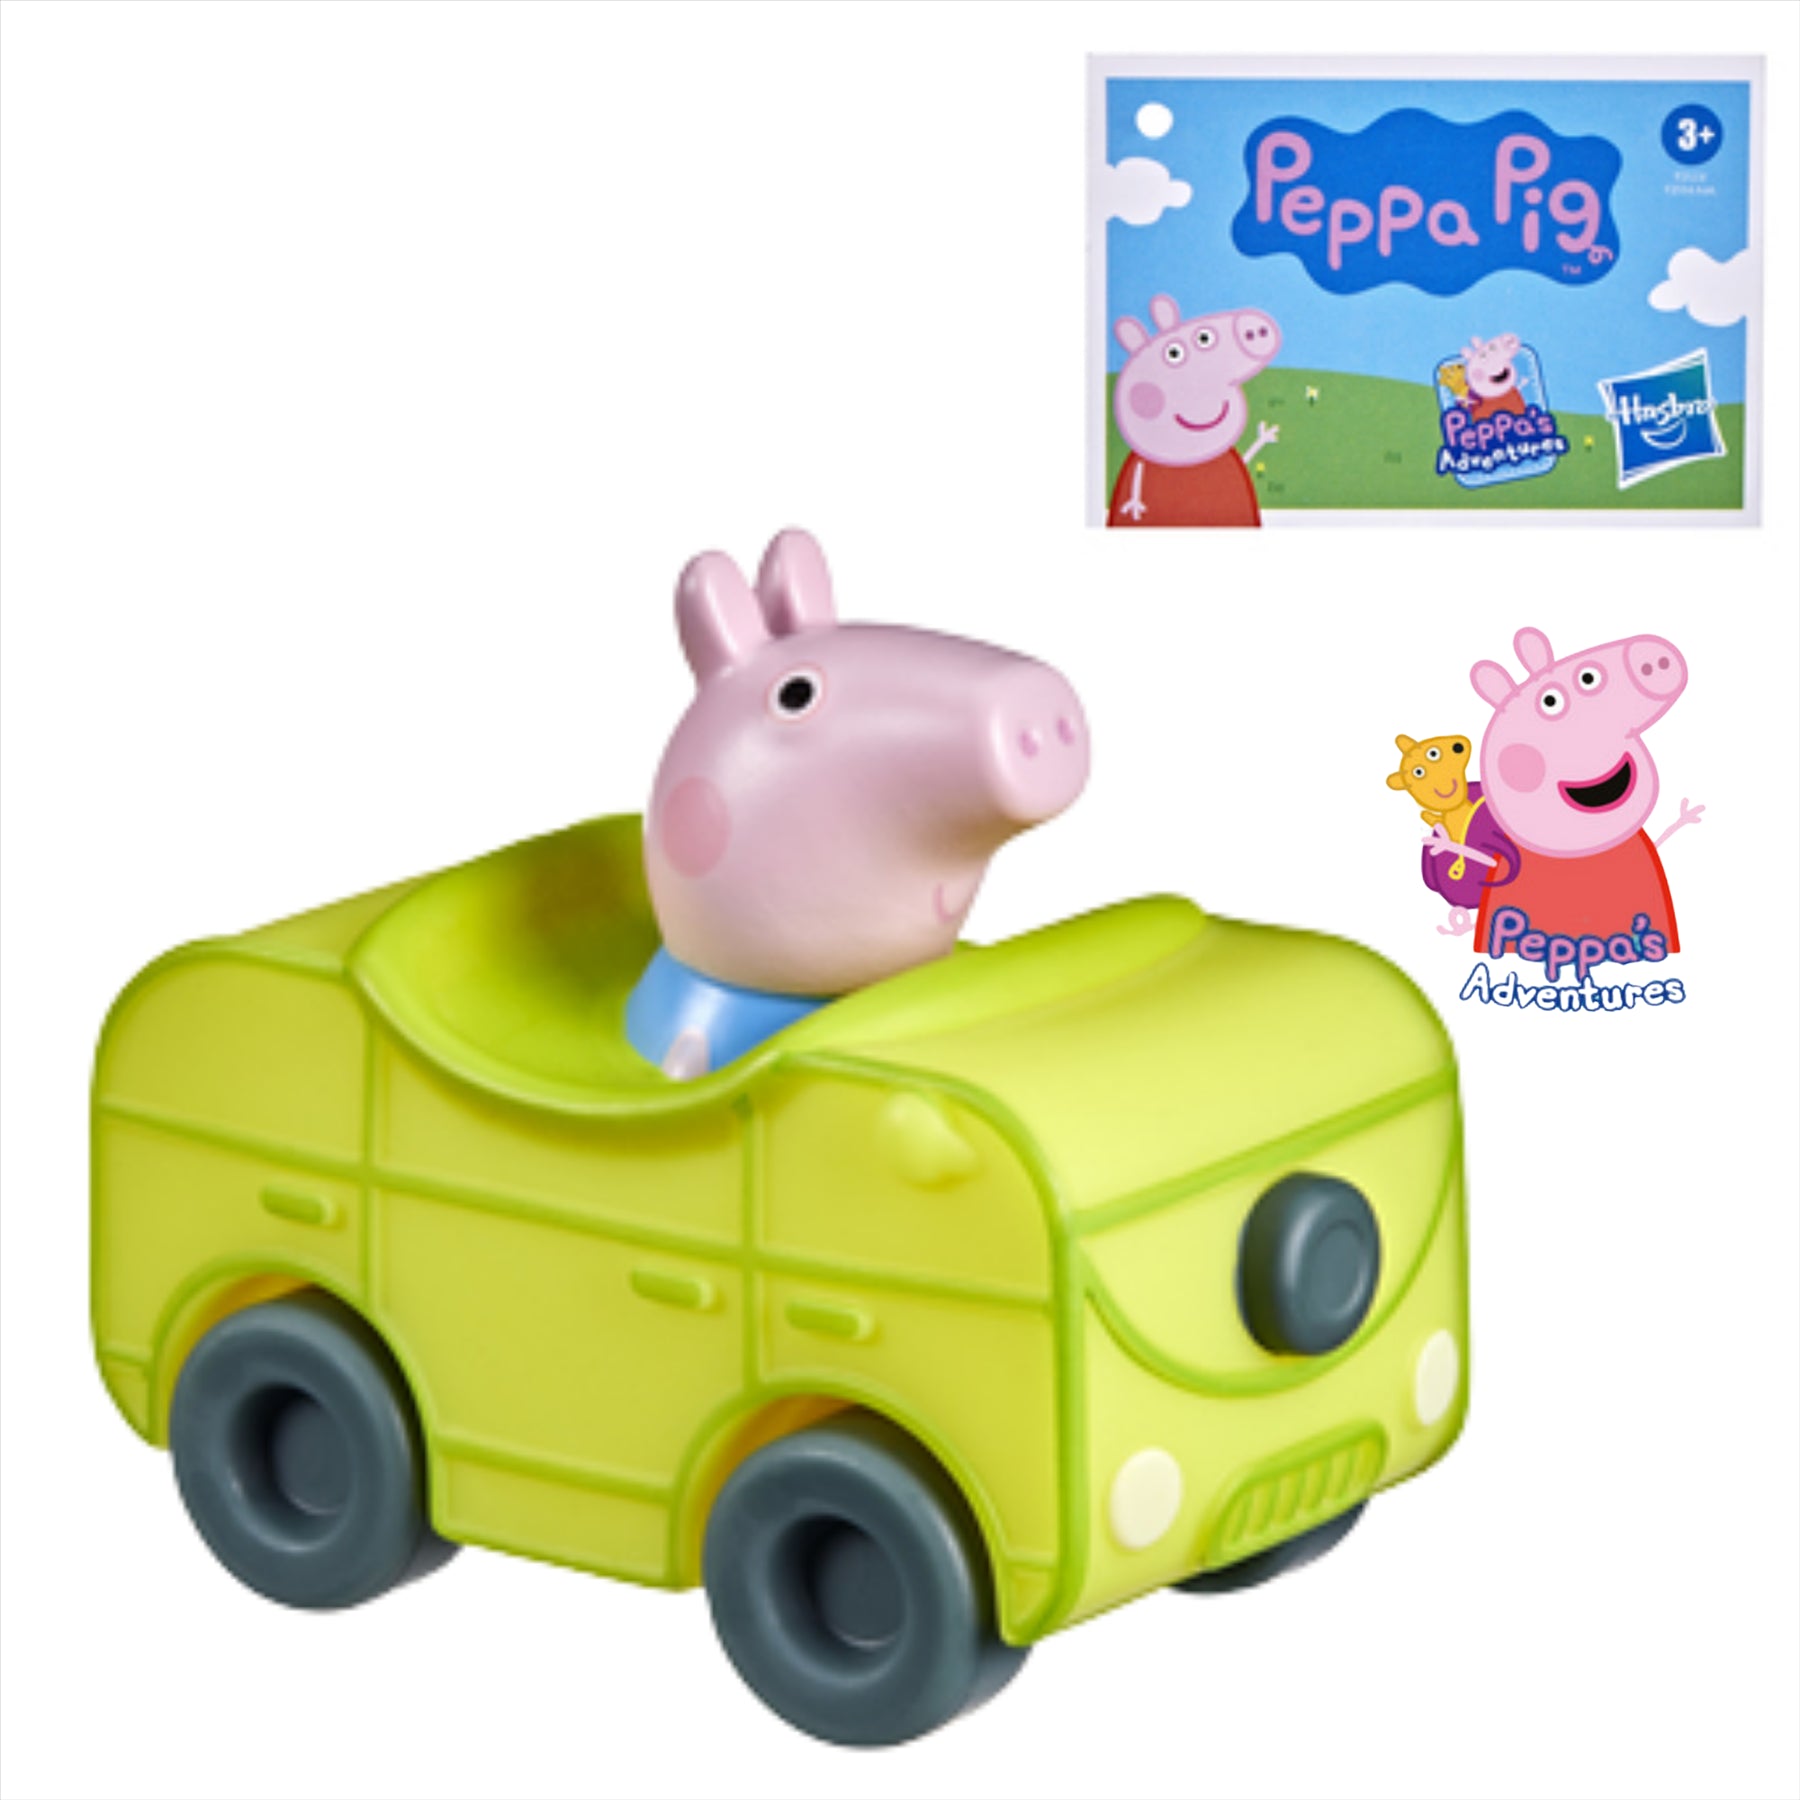 Peppa Pig Little Buggies - George Pig Figure in Yellow Toy Car Vehicle - Toptoys2u